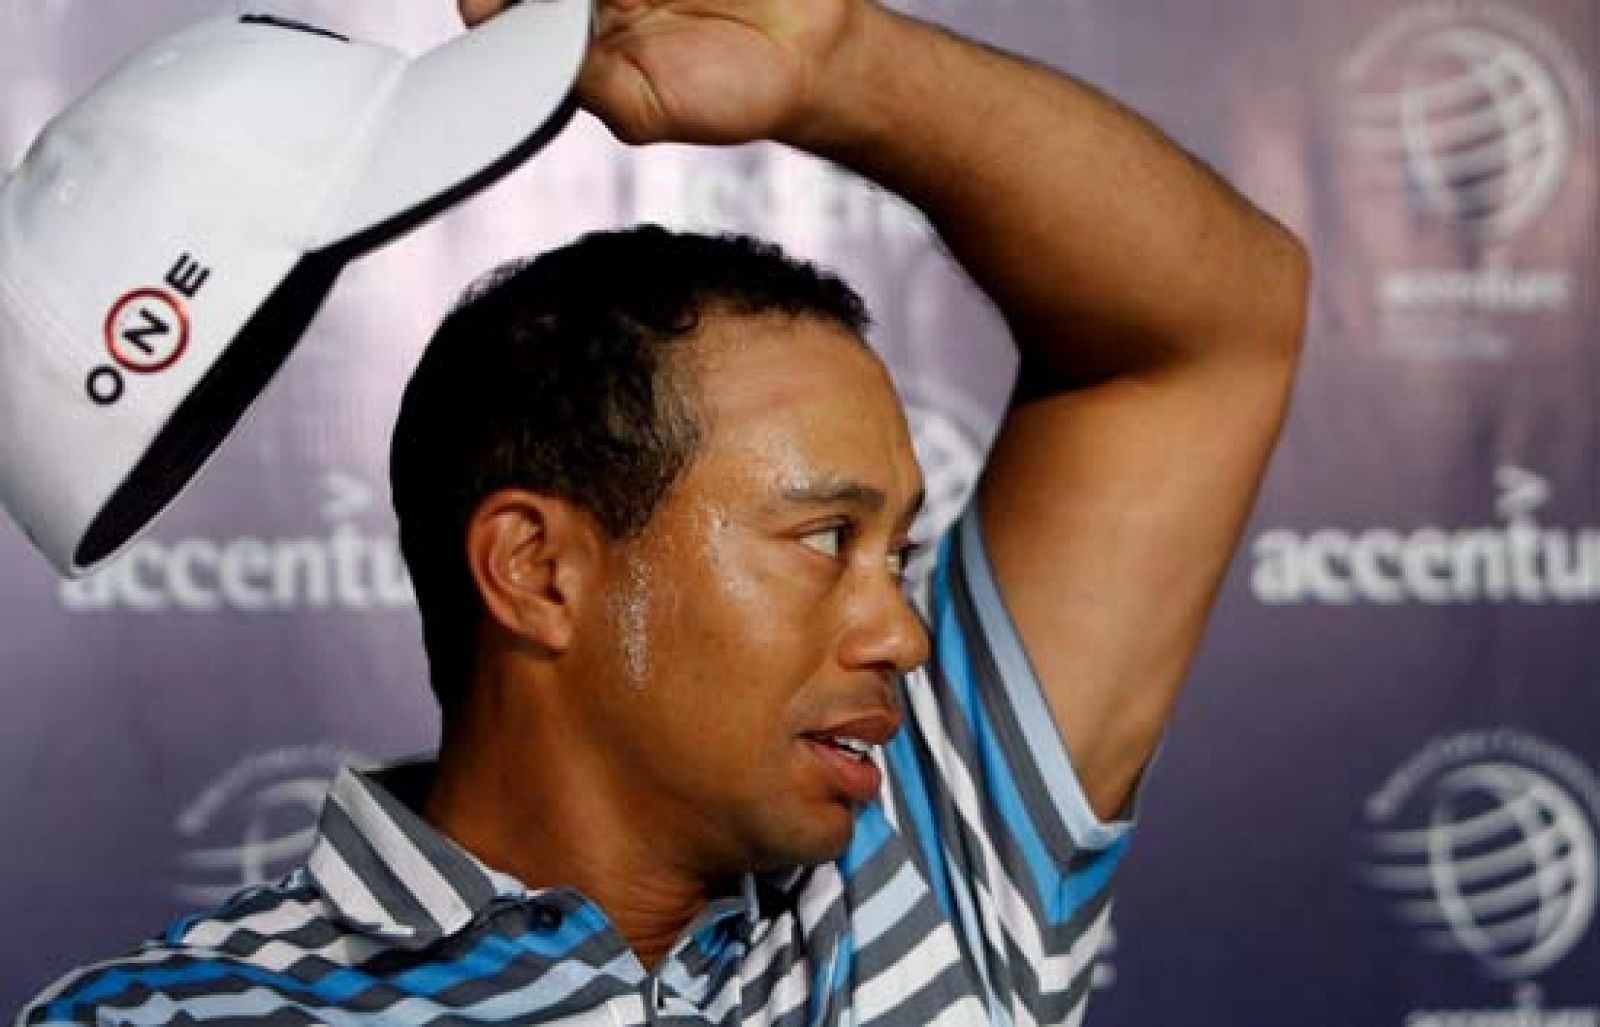 El retorno del "Tigre" ha creado una enorme expectación.Tiger Woods volverá a jugar tras una lesión que lo ha mantenido apartado de los hoyos durante ocho meses. 